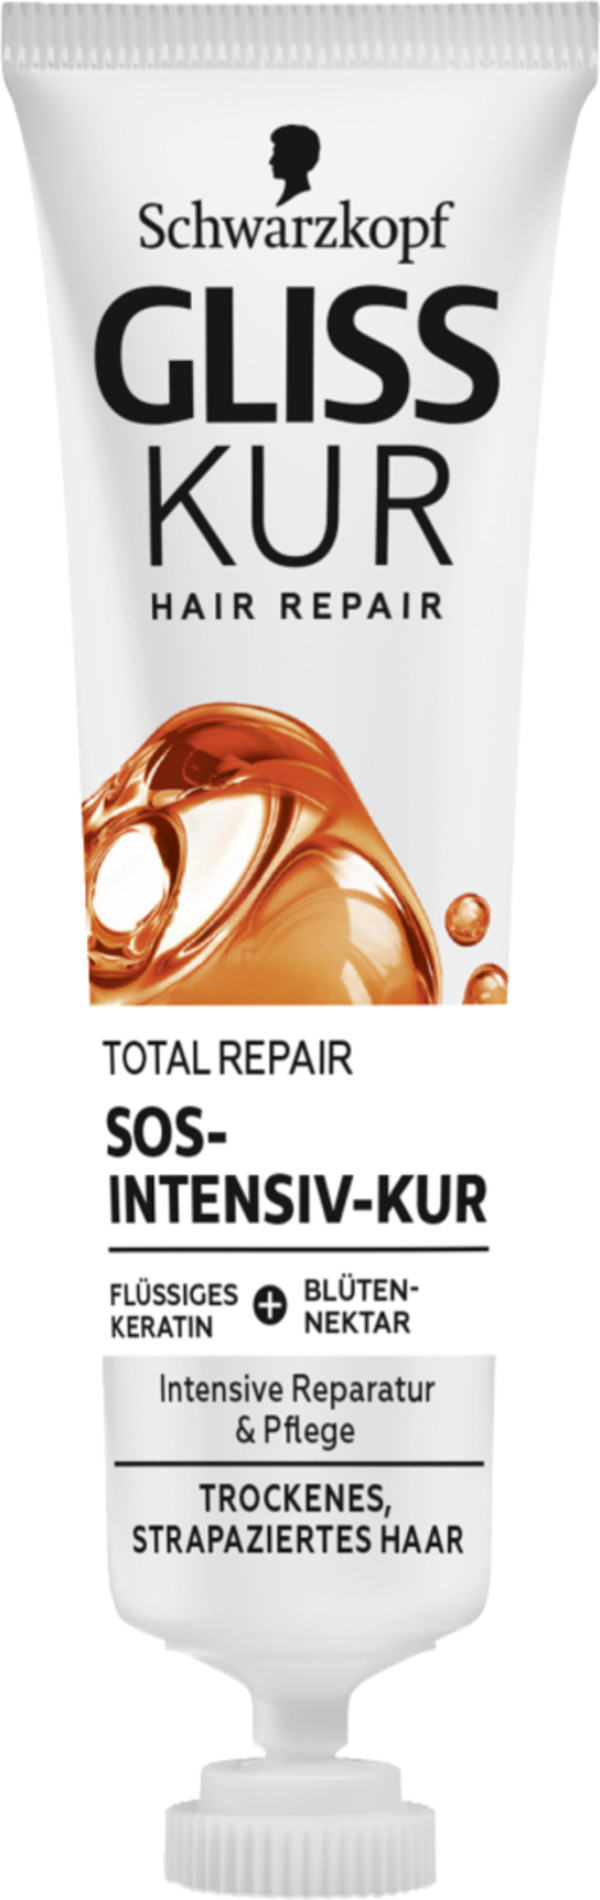 Bild 1 von Schwarzkopf Gliss Kur Total Repair SOS-Intensiv-Kur